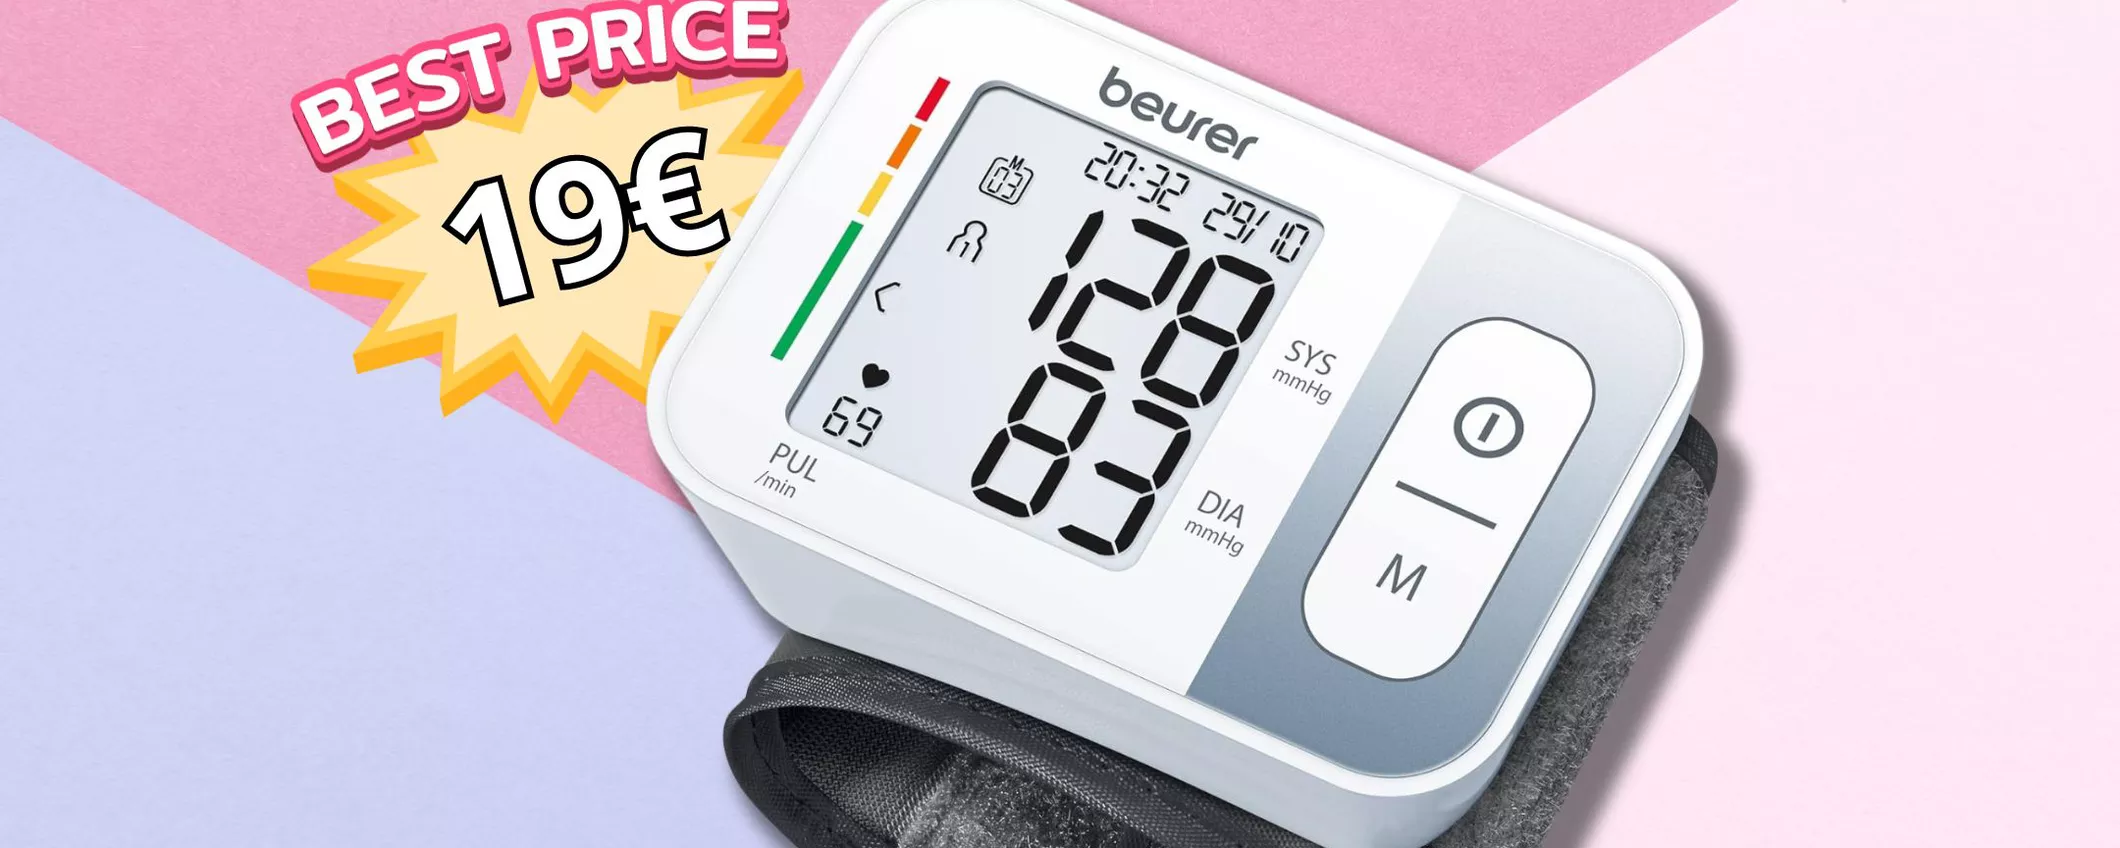 SOLO 19€ per il Misuratore di Pressione da Polso: scopri la qualità del dispositivo medico!